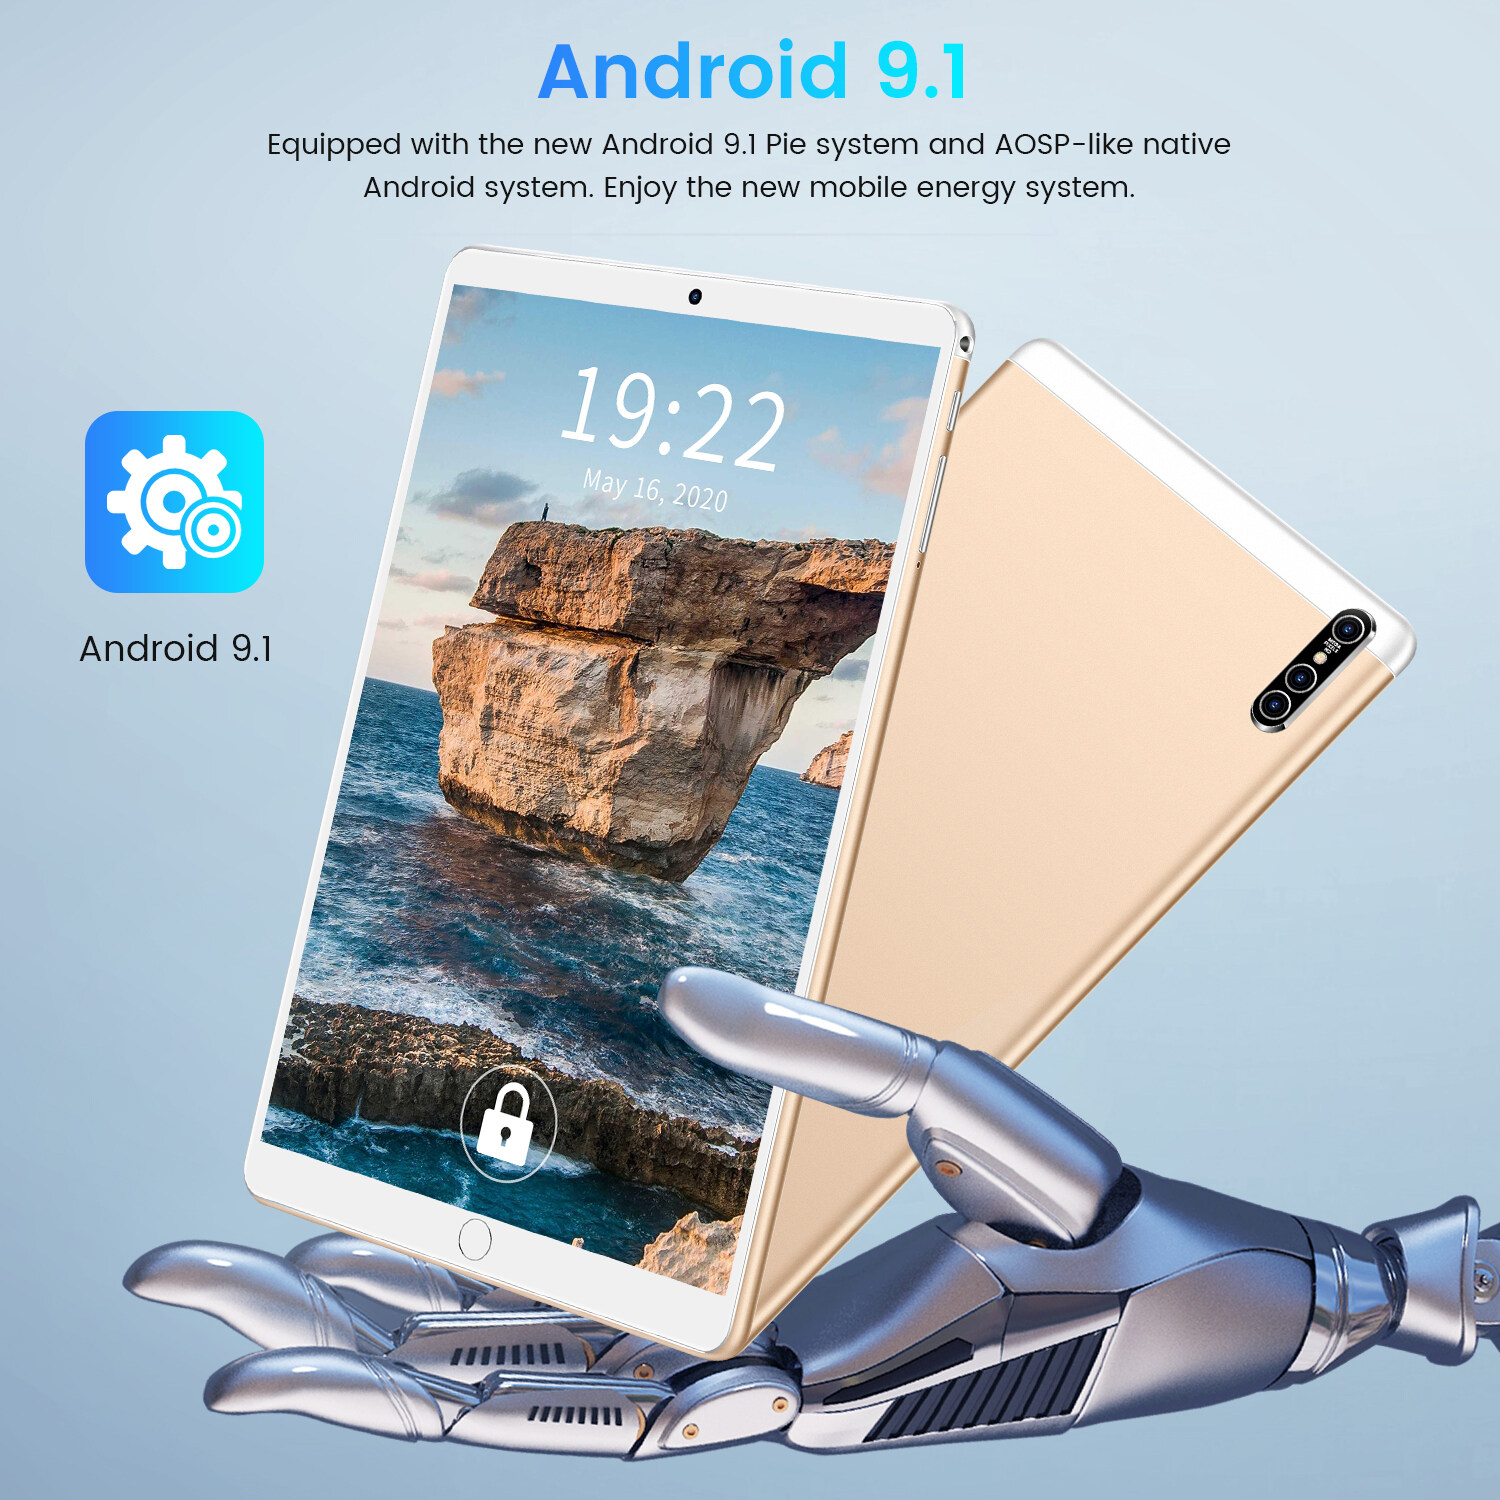 มุมมองเพิ่มเติมของสินค้า Realmi แท็บเล็ตพีซี android 9.1Tablet pc แท็บเล็ต 10.1 นิ้ว หน้าจอโค้ง 3D tablet ( 8G+256G) ซัมซุงแท็บเล็ตหน้าจอโค้ง แท็บเล็ตอัจฉริยะ แท็บเล็ตธุรกิจสิบหลั